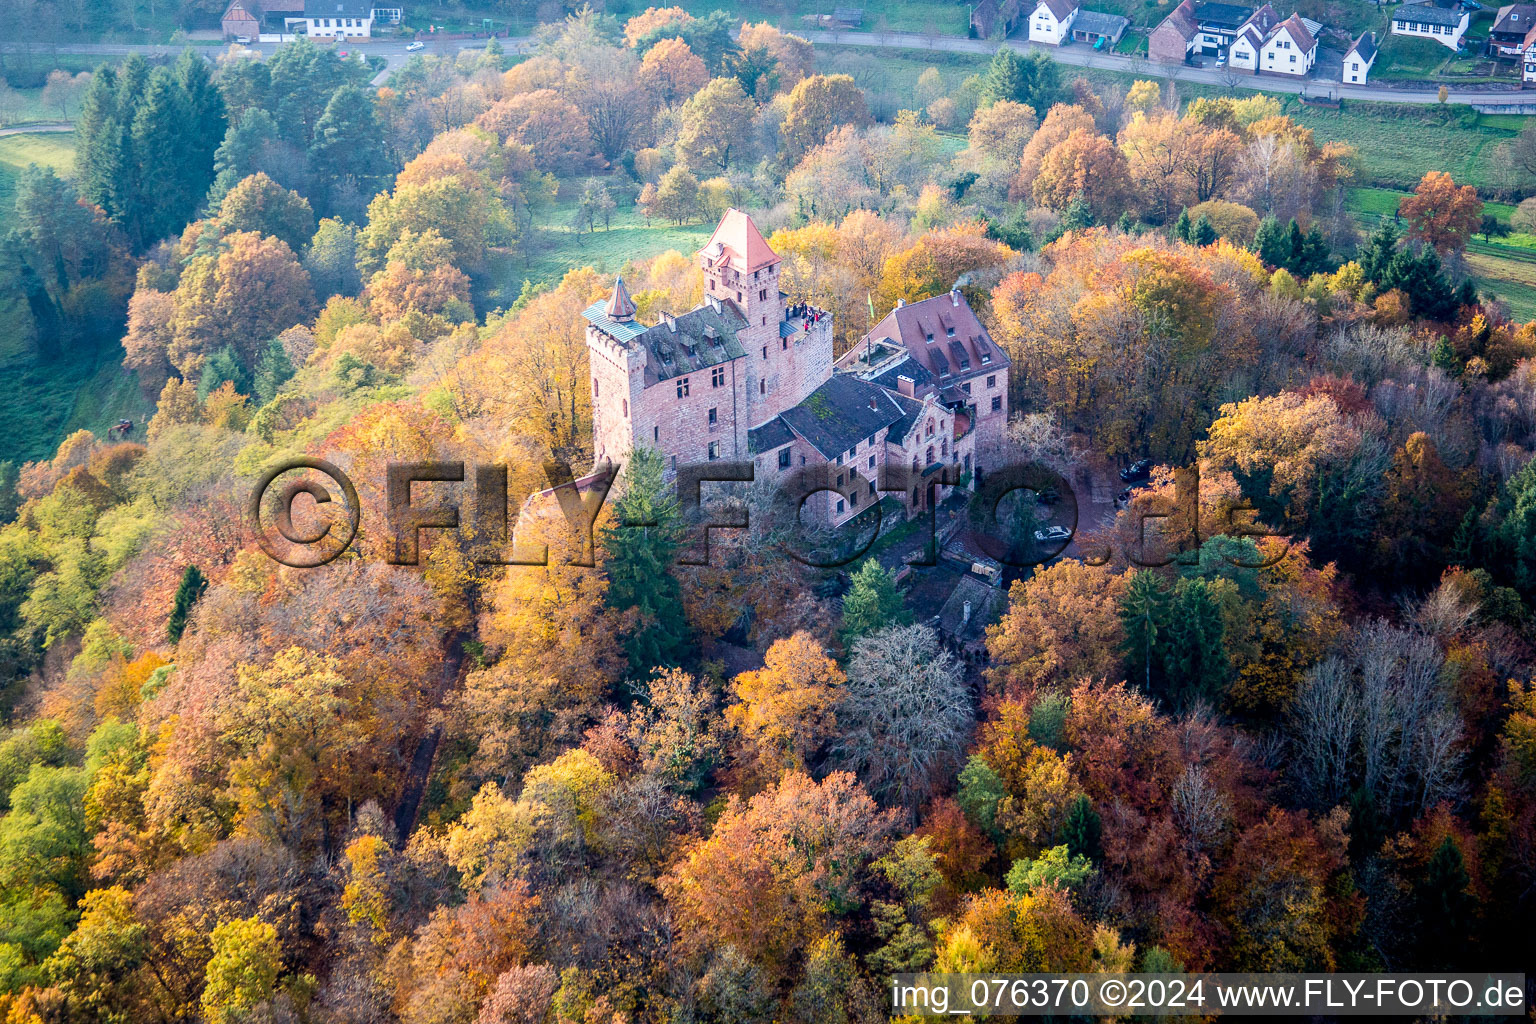 Vue aérienne de Château de Berwartstein entouré d'une forêt aux couleurs automnales à Erlenbach bei Dahn dans le département Rhénanie-Palatinat, Allemagne